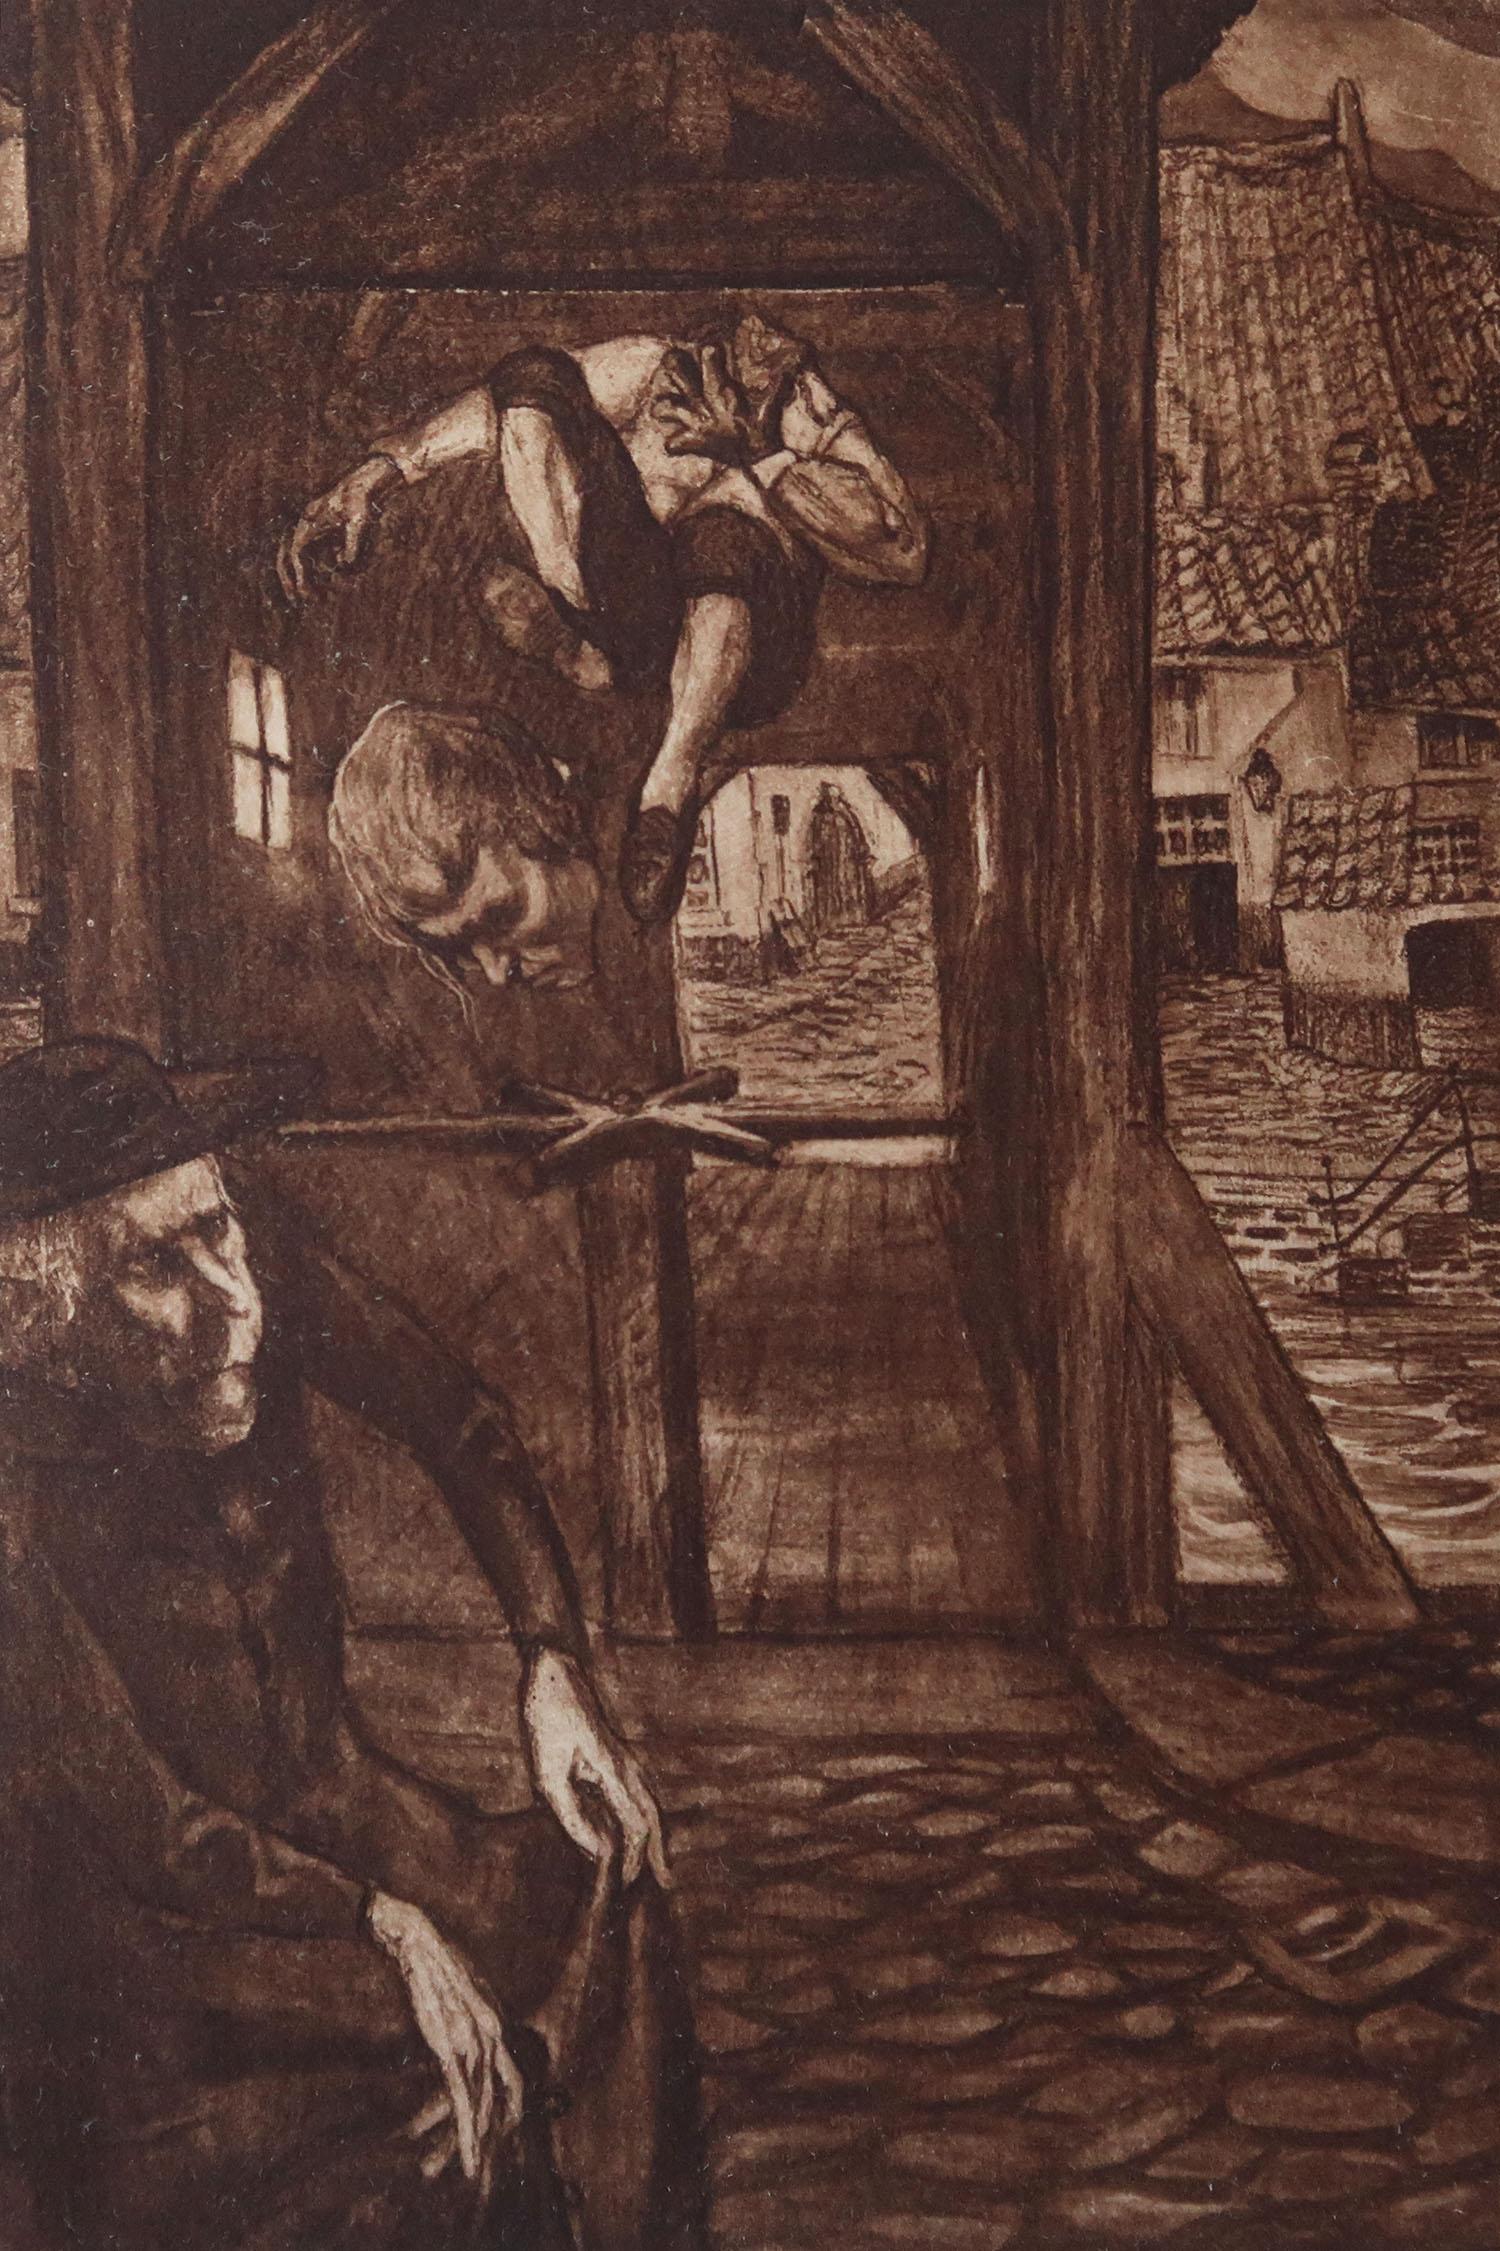 Sensationelles Bild von Frederick Simpson Coburn.

In Anlehnung an einen meiner Lieblingskünstler, Goya.

Fototiefdruck

Limitierte Auflage von 300 Stück. Dies ist Nr. 84

Aus den Gesamtwerken von Edgar Allen Poe.

Herausgegeben von